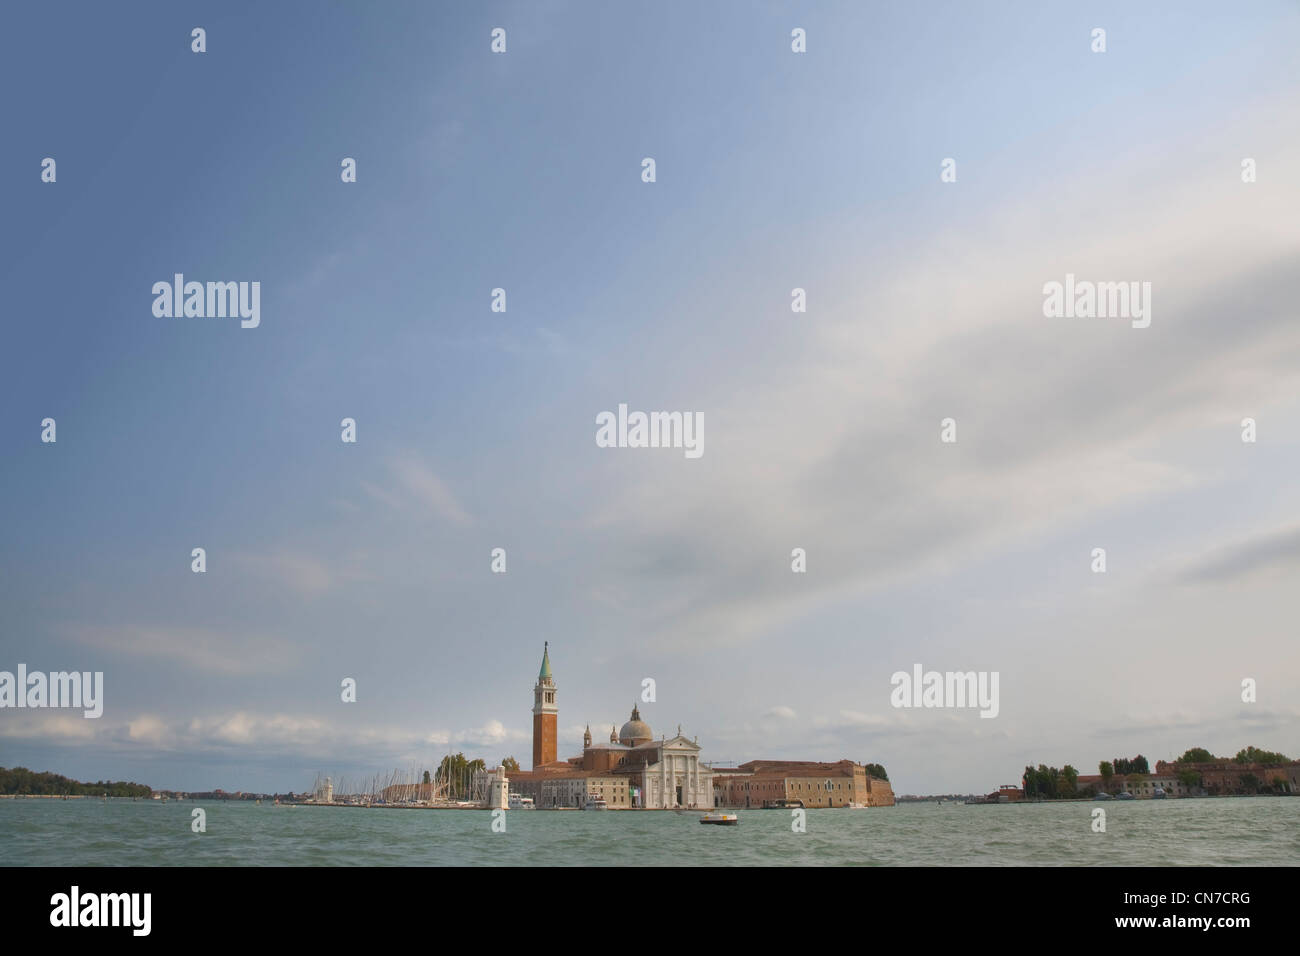 Vue depuis la Place St Marc, l'île de San Giorgio Maggiore, à Venise, Italie Banque D'Images